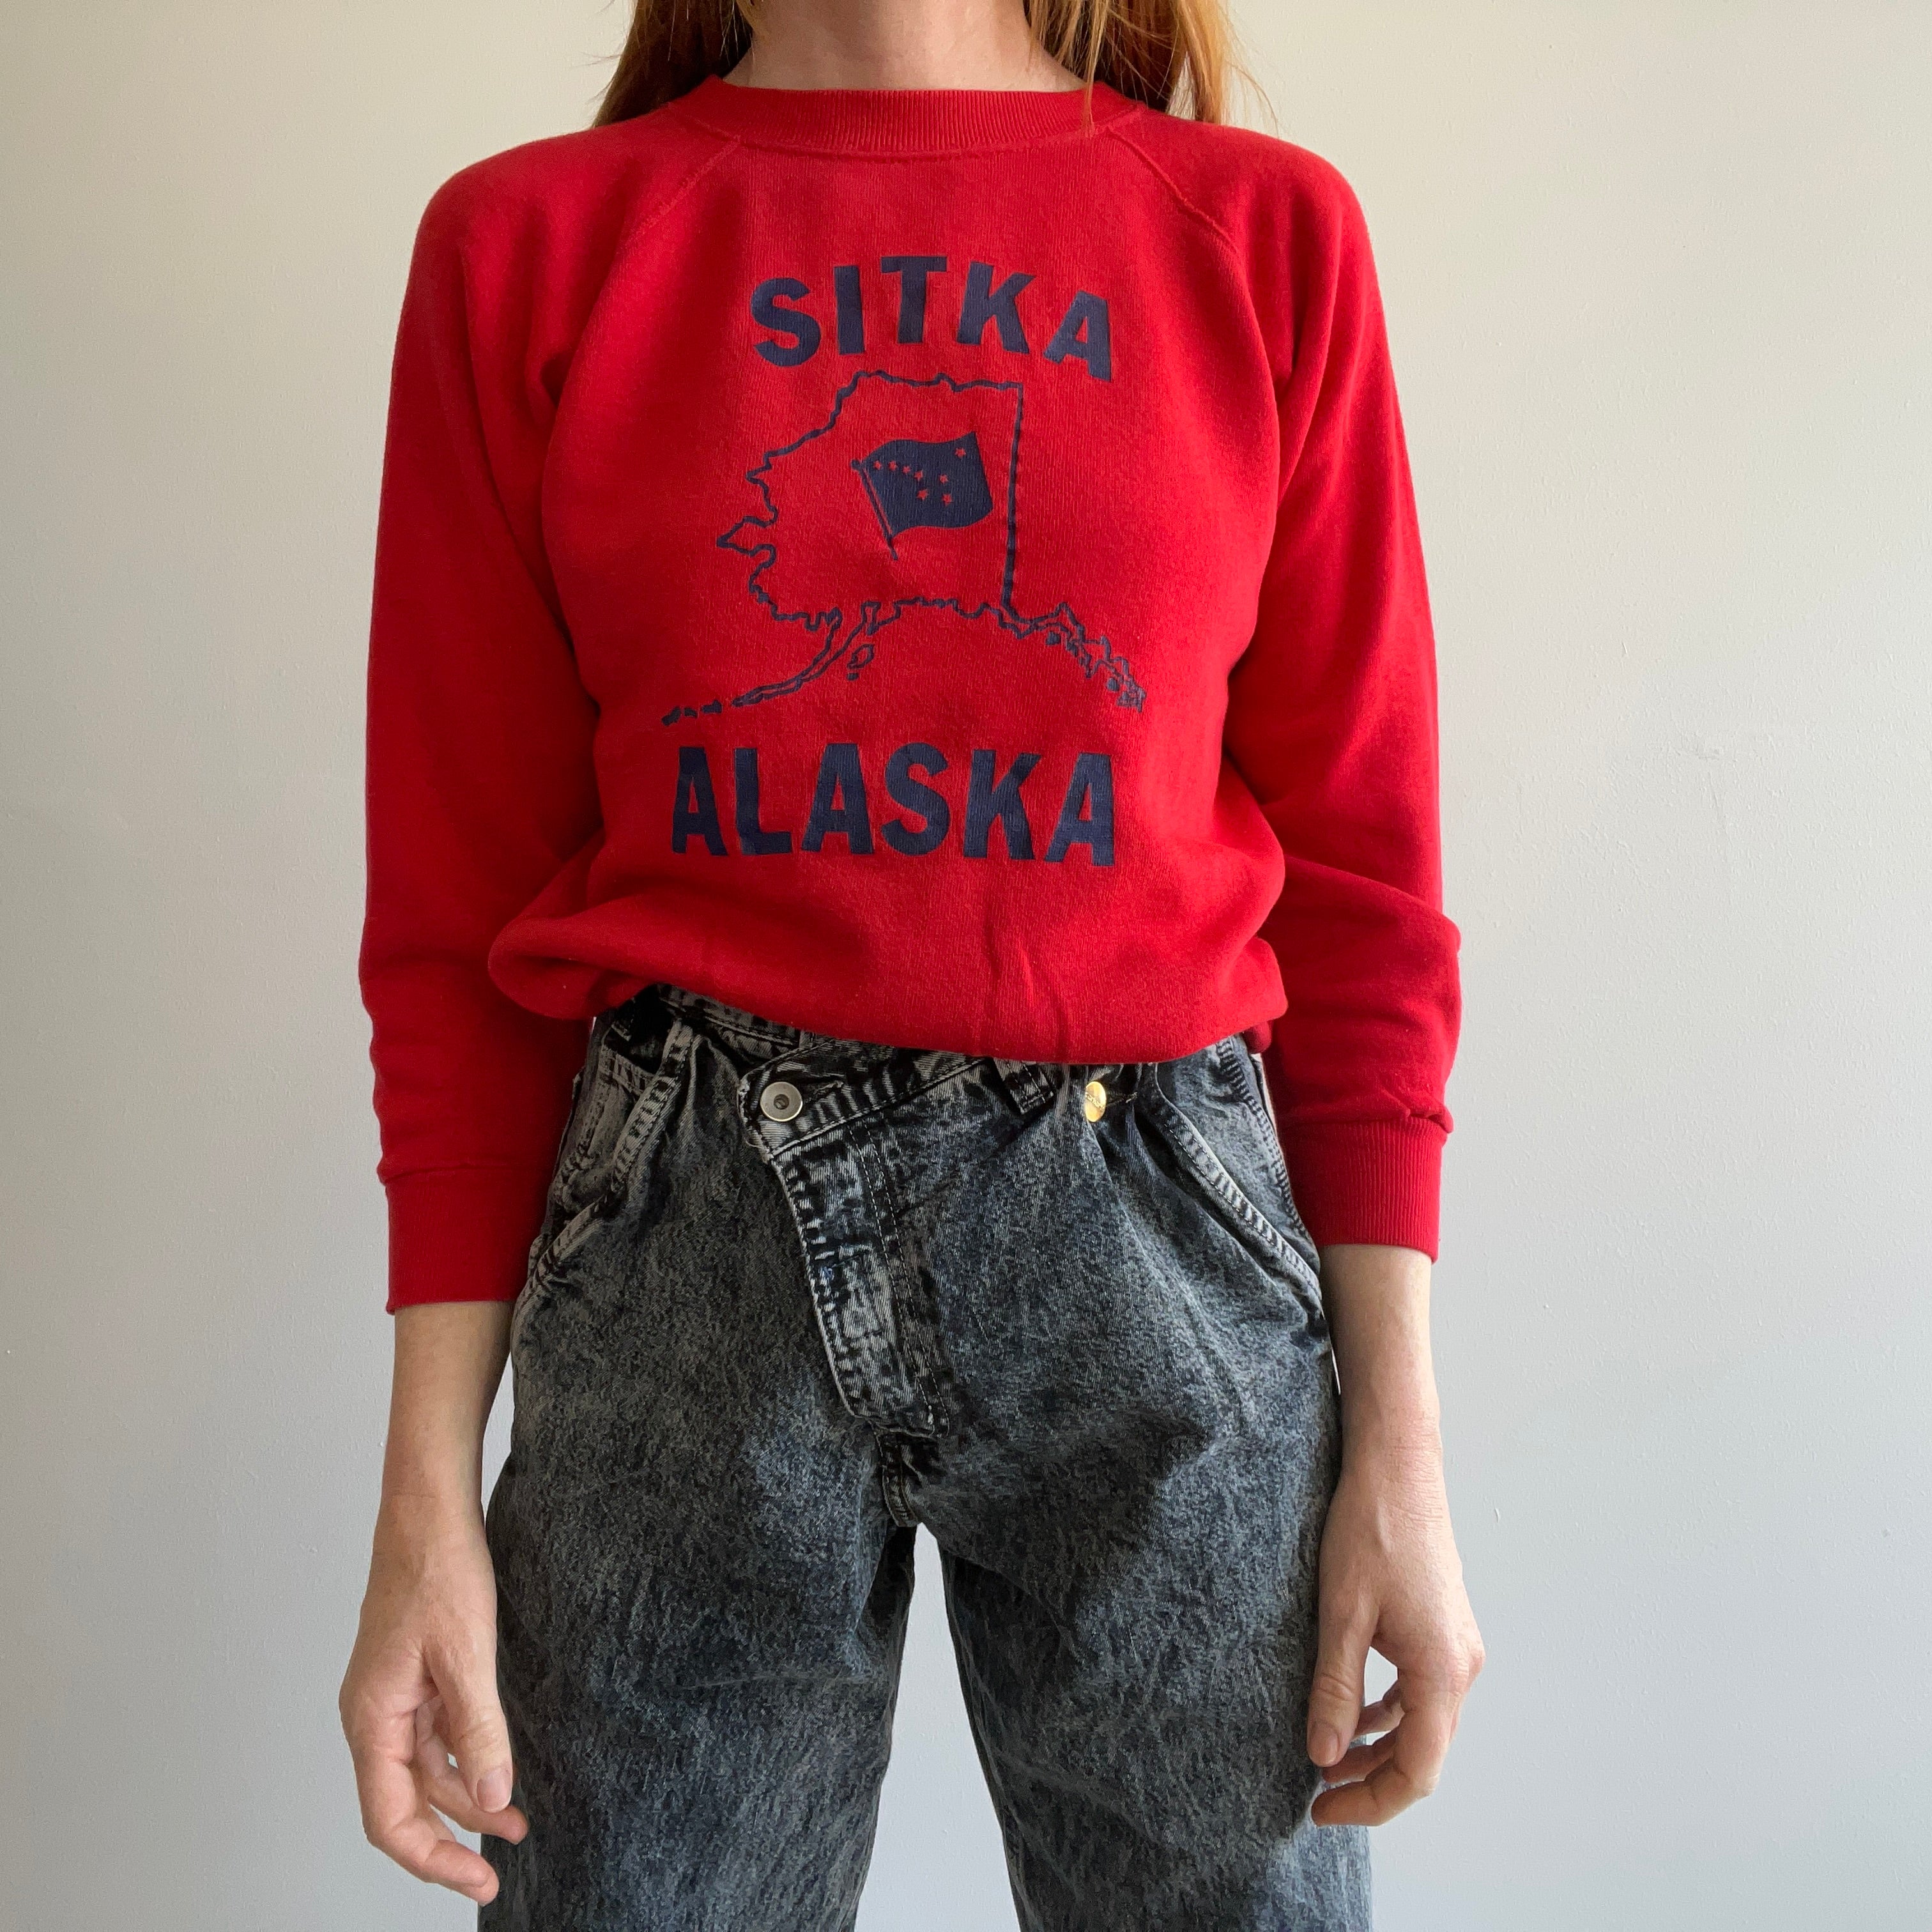 Sweat touristique Sika Alaska des années 1970/80 - Goussets sous les bras